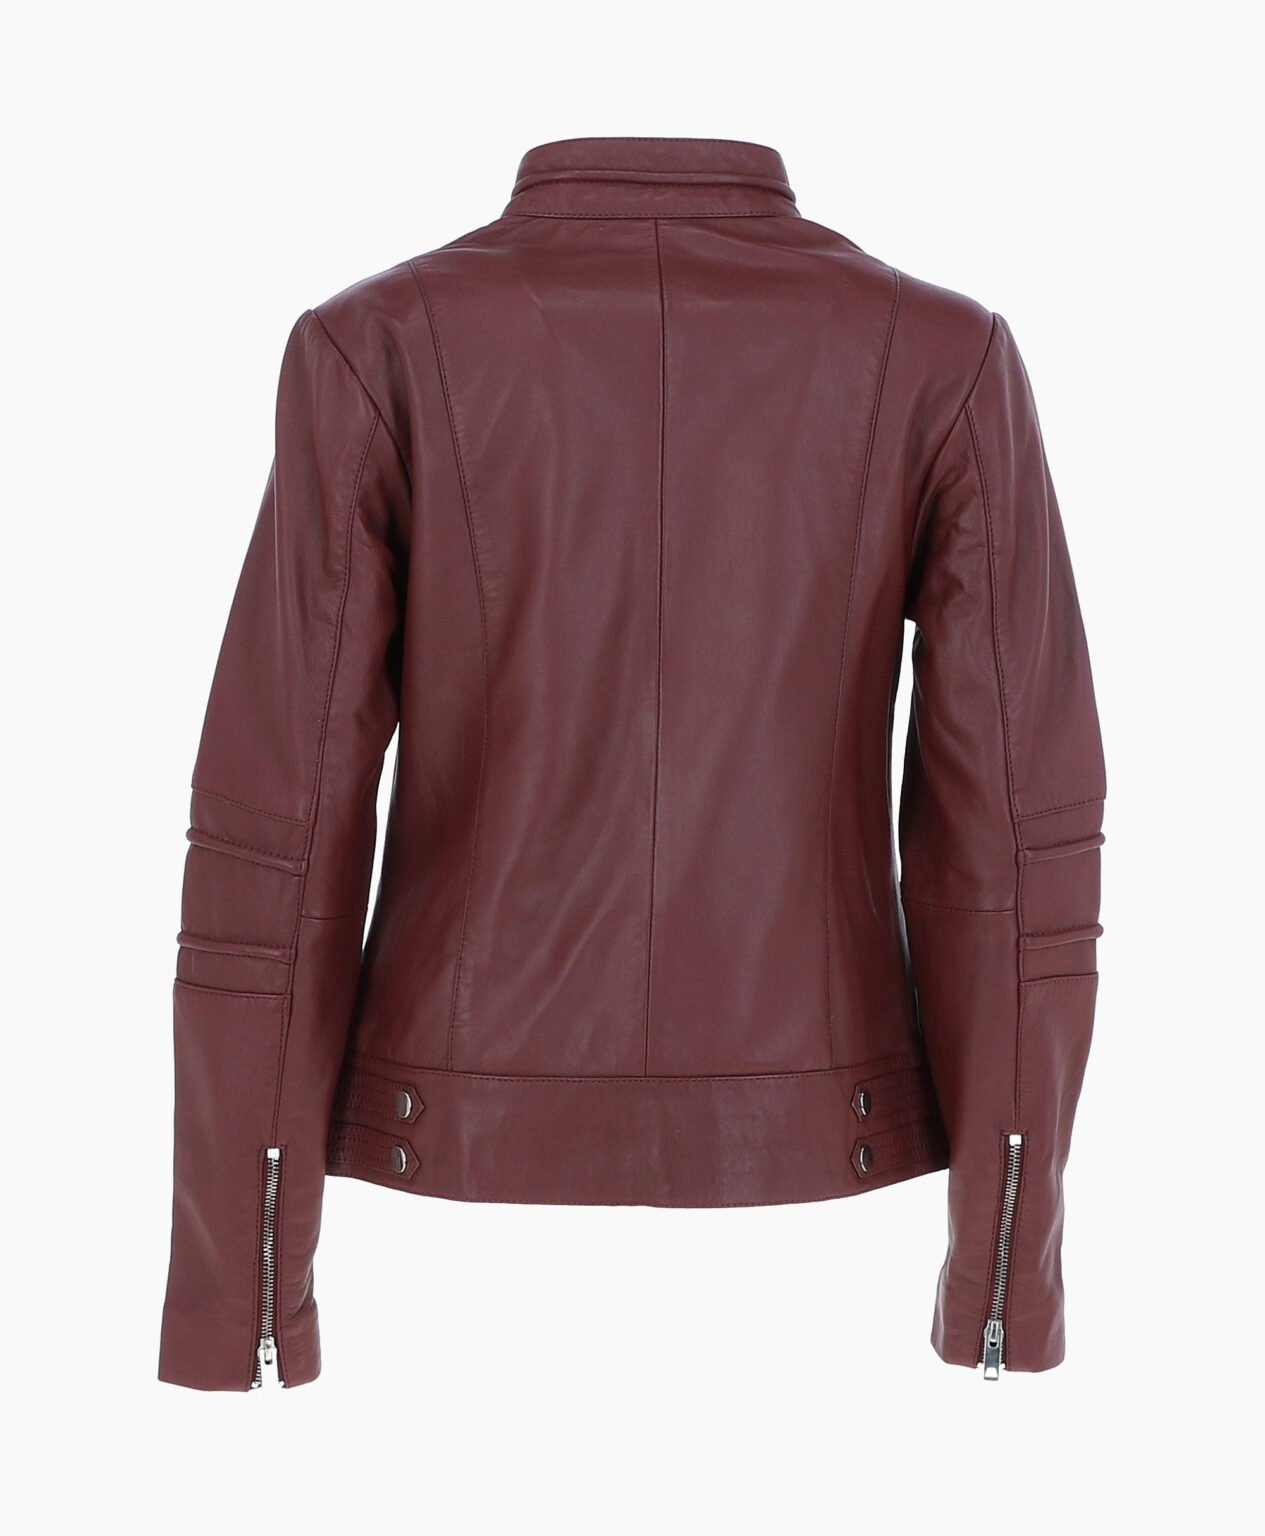 vogue-jacket-leather-biker-jacket-oxblood-lahaina-image202